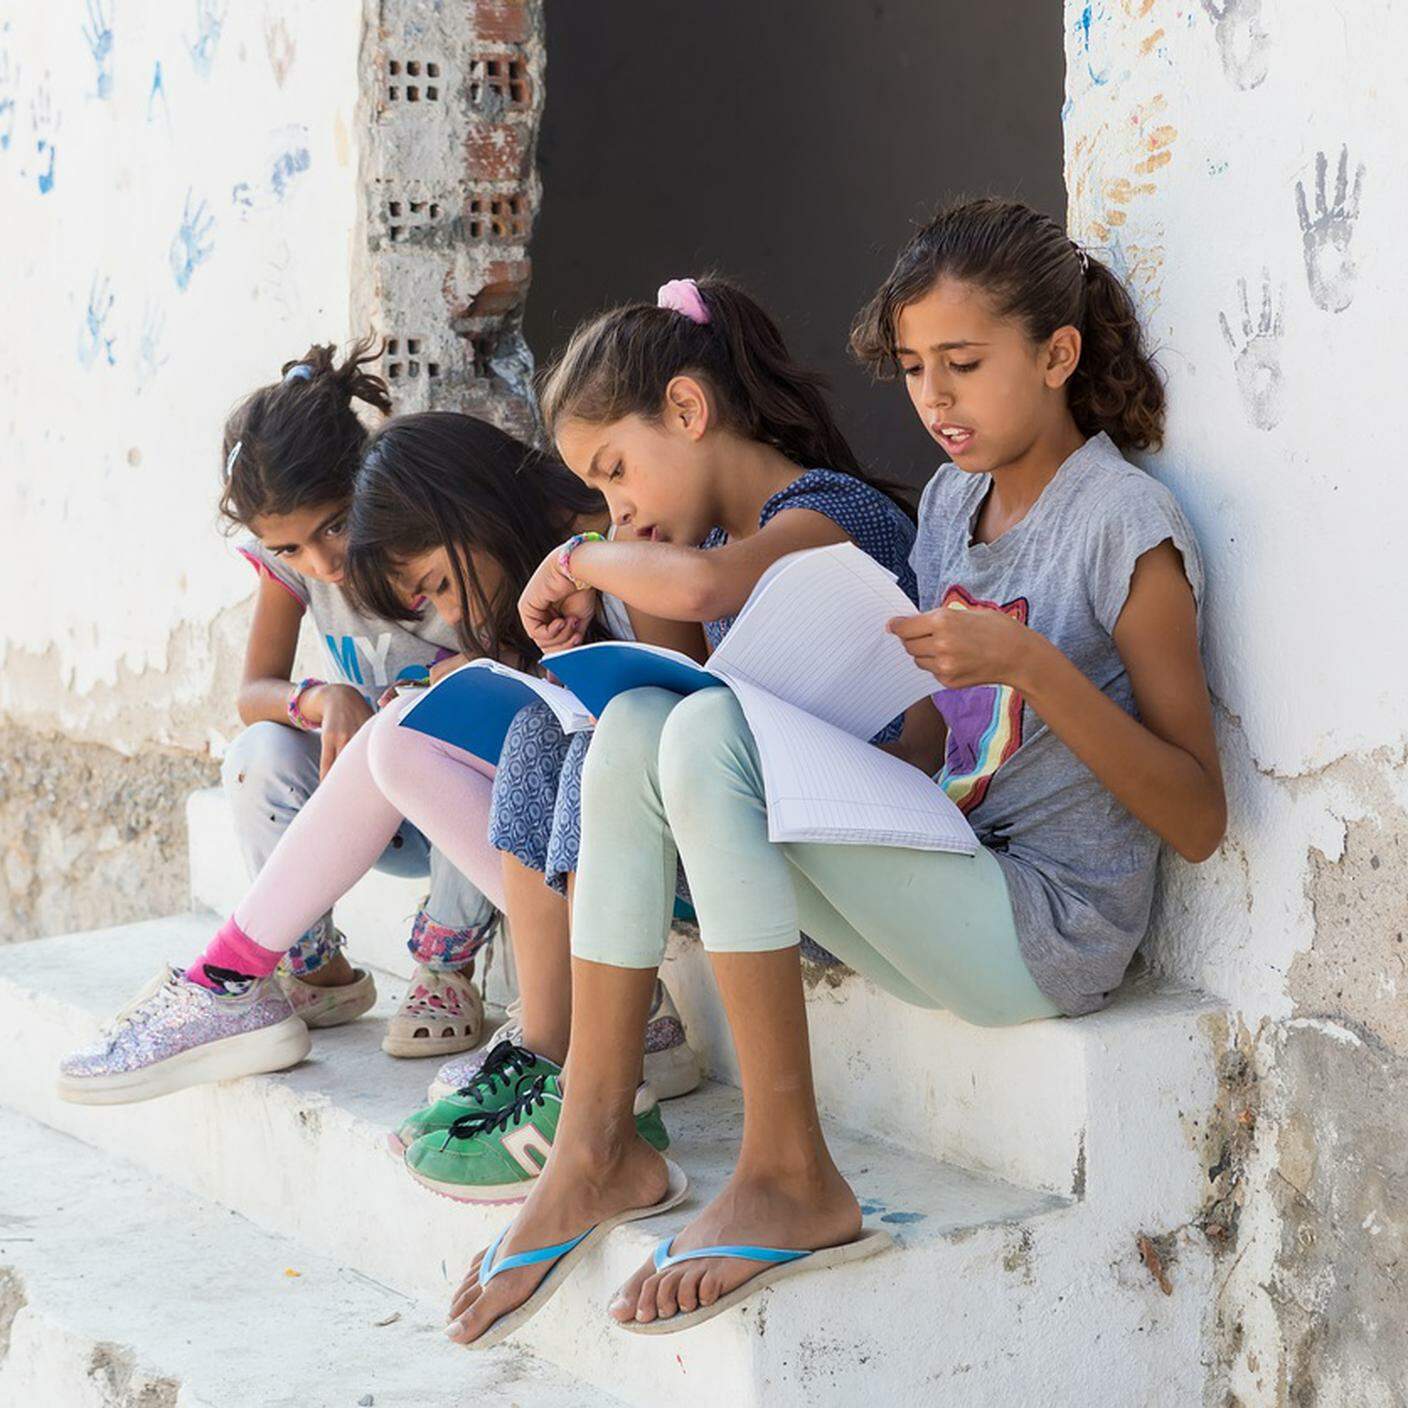 La biblioteca che va dai bambini nei campi profughi e nelle periferie disagiate